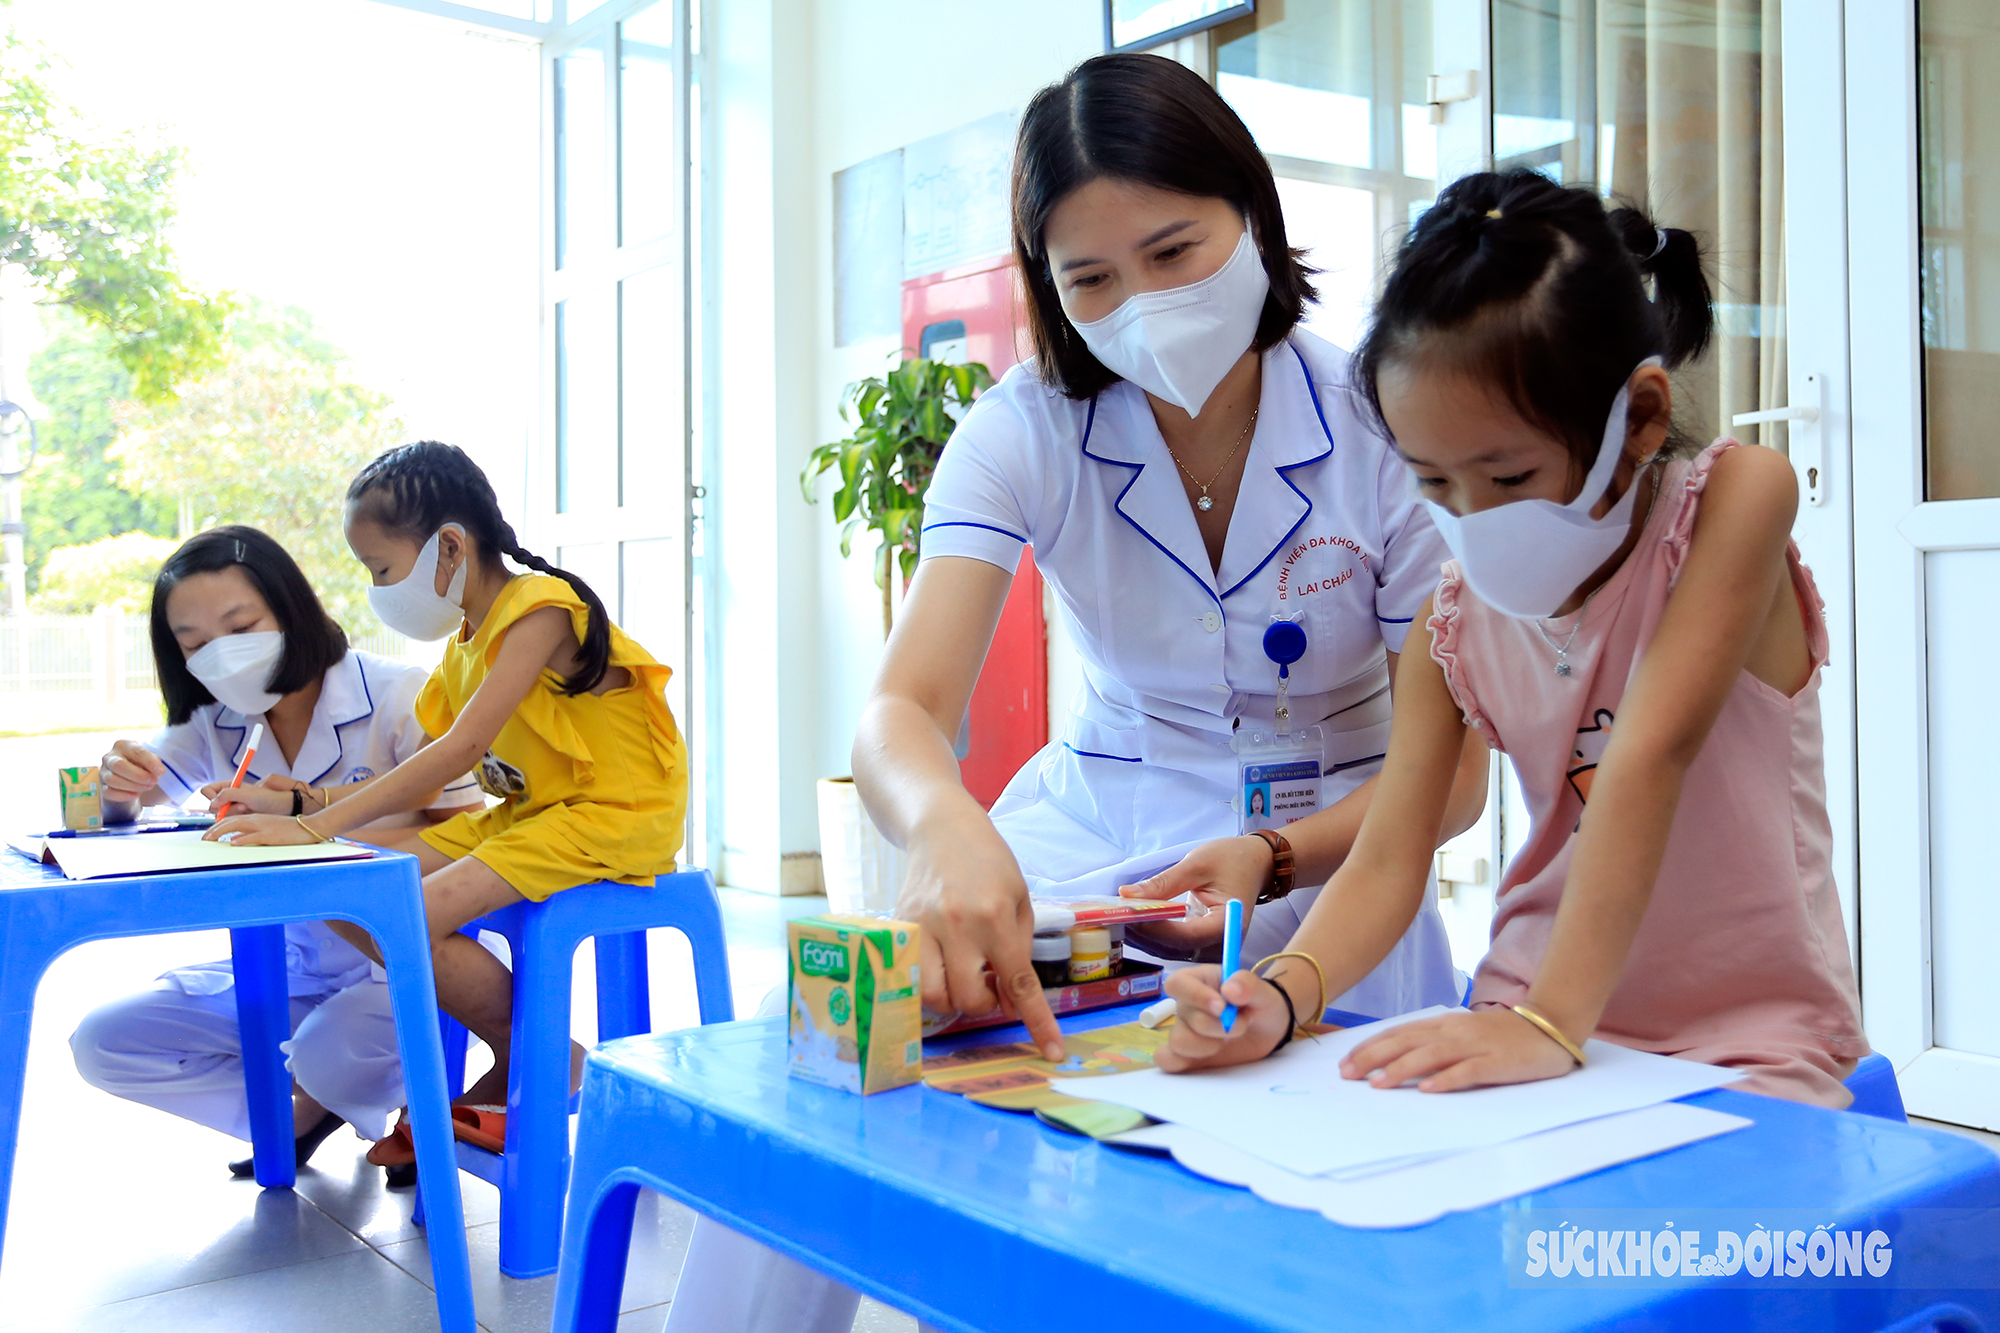 Cán bộ Y tế xây dựng "Tủ sách từ thiện" cho trẻ em vùng cao  - Ảnh 5.